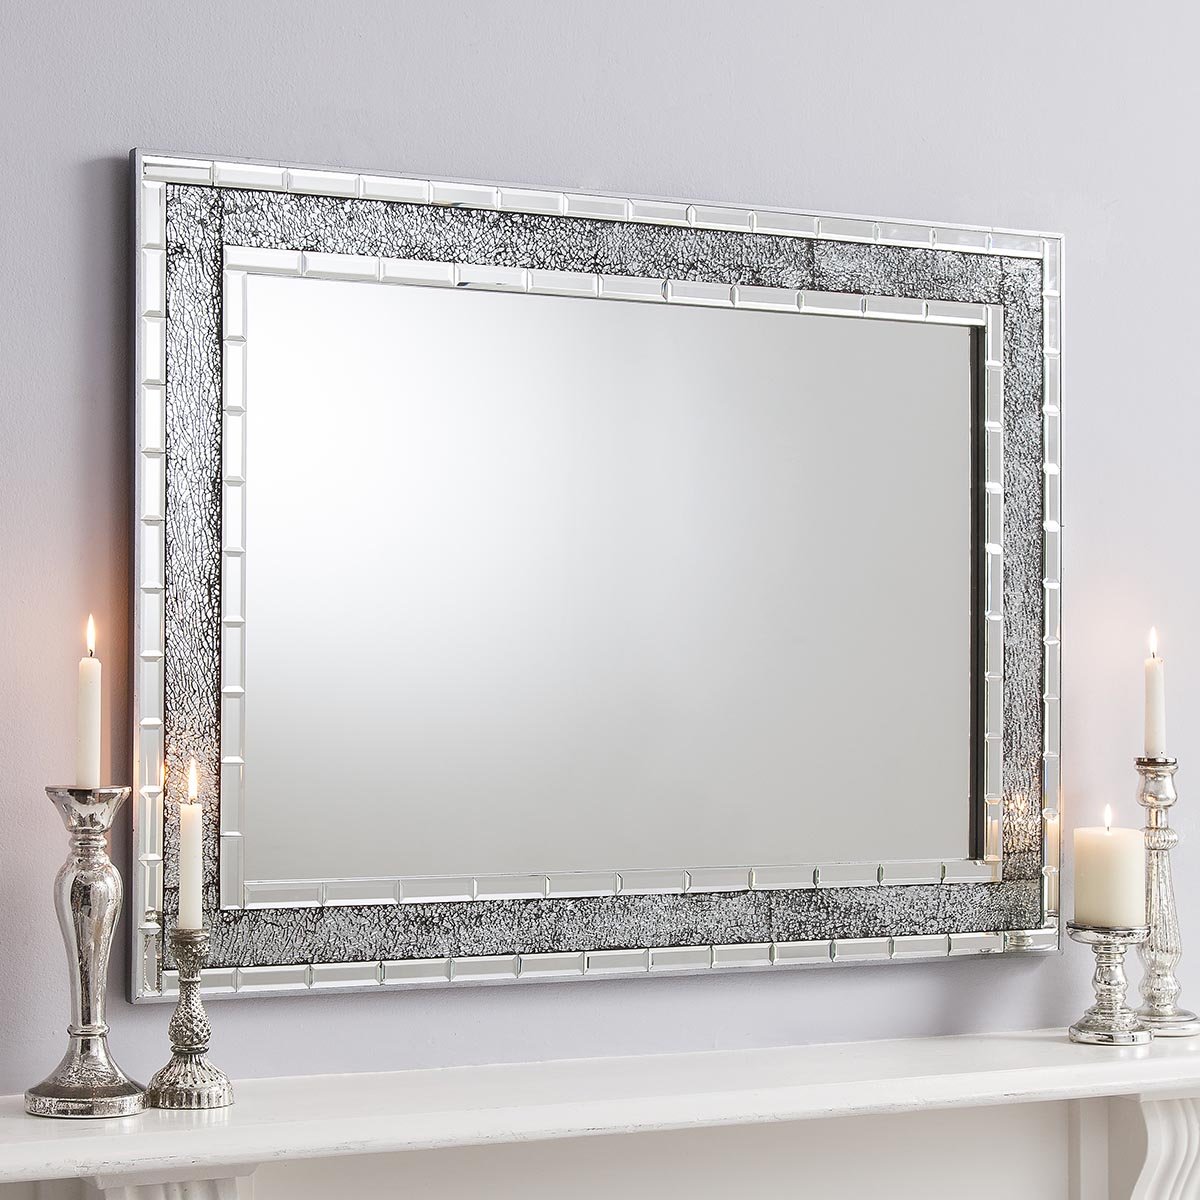 Зеркало в рамке в ванной. Багет для зеркала. Зеркало в серебристой раме. Зеркало с серебряной рамкой. Зеркало в красивой раме.